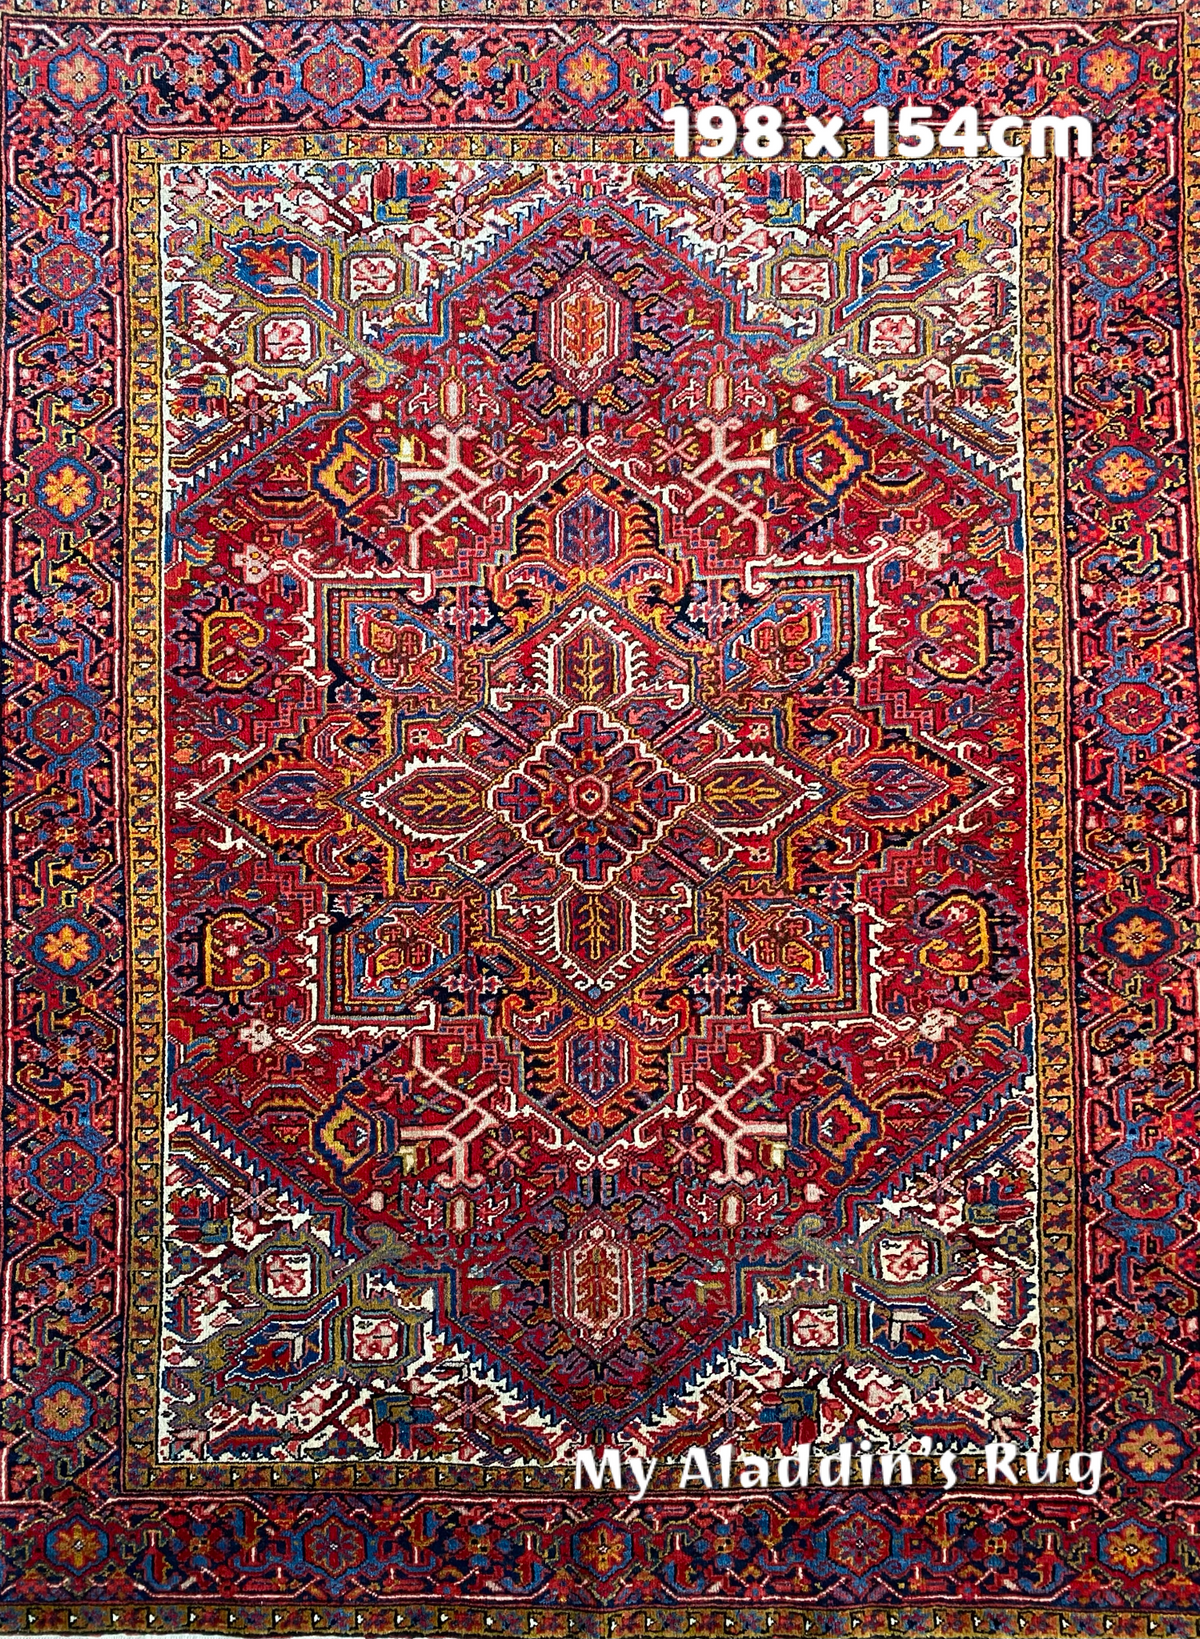 オールド ヘリーズ産 ペルシャ絨毯 198×154cm– MARC My Aladdin's Rug 